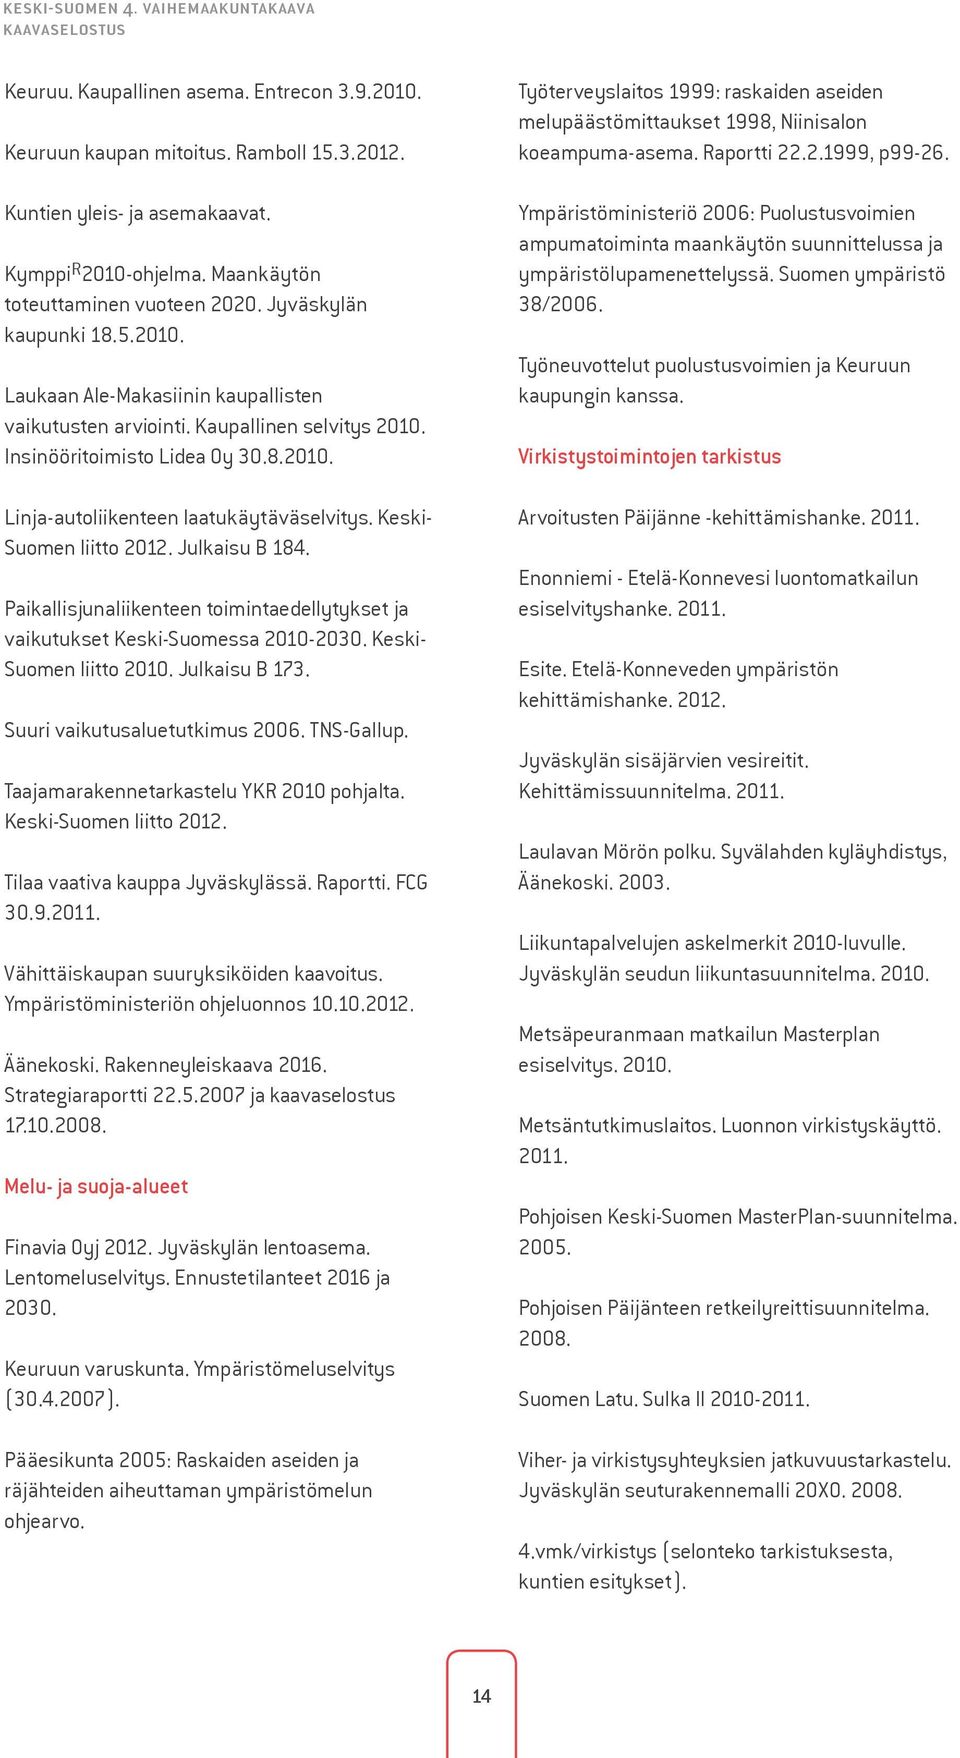 Keski- Suomen liitto 2012. Julkaisu B 184. Paikallisjunaliikenteen toimintaedellytykset ja vaikutukset Keski-Suomessa 2010-2030. Keski- Suomen liitto 2010. Julkaisu B 173.